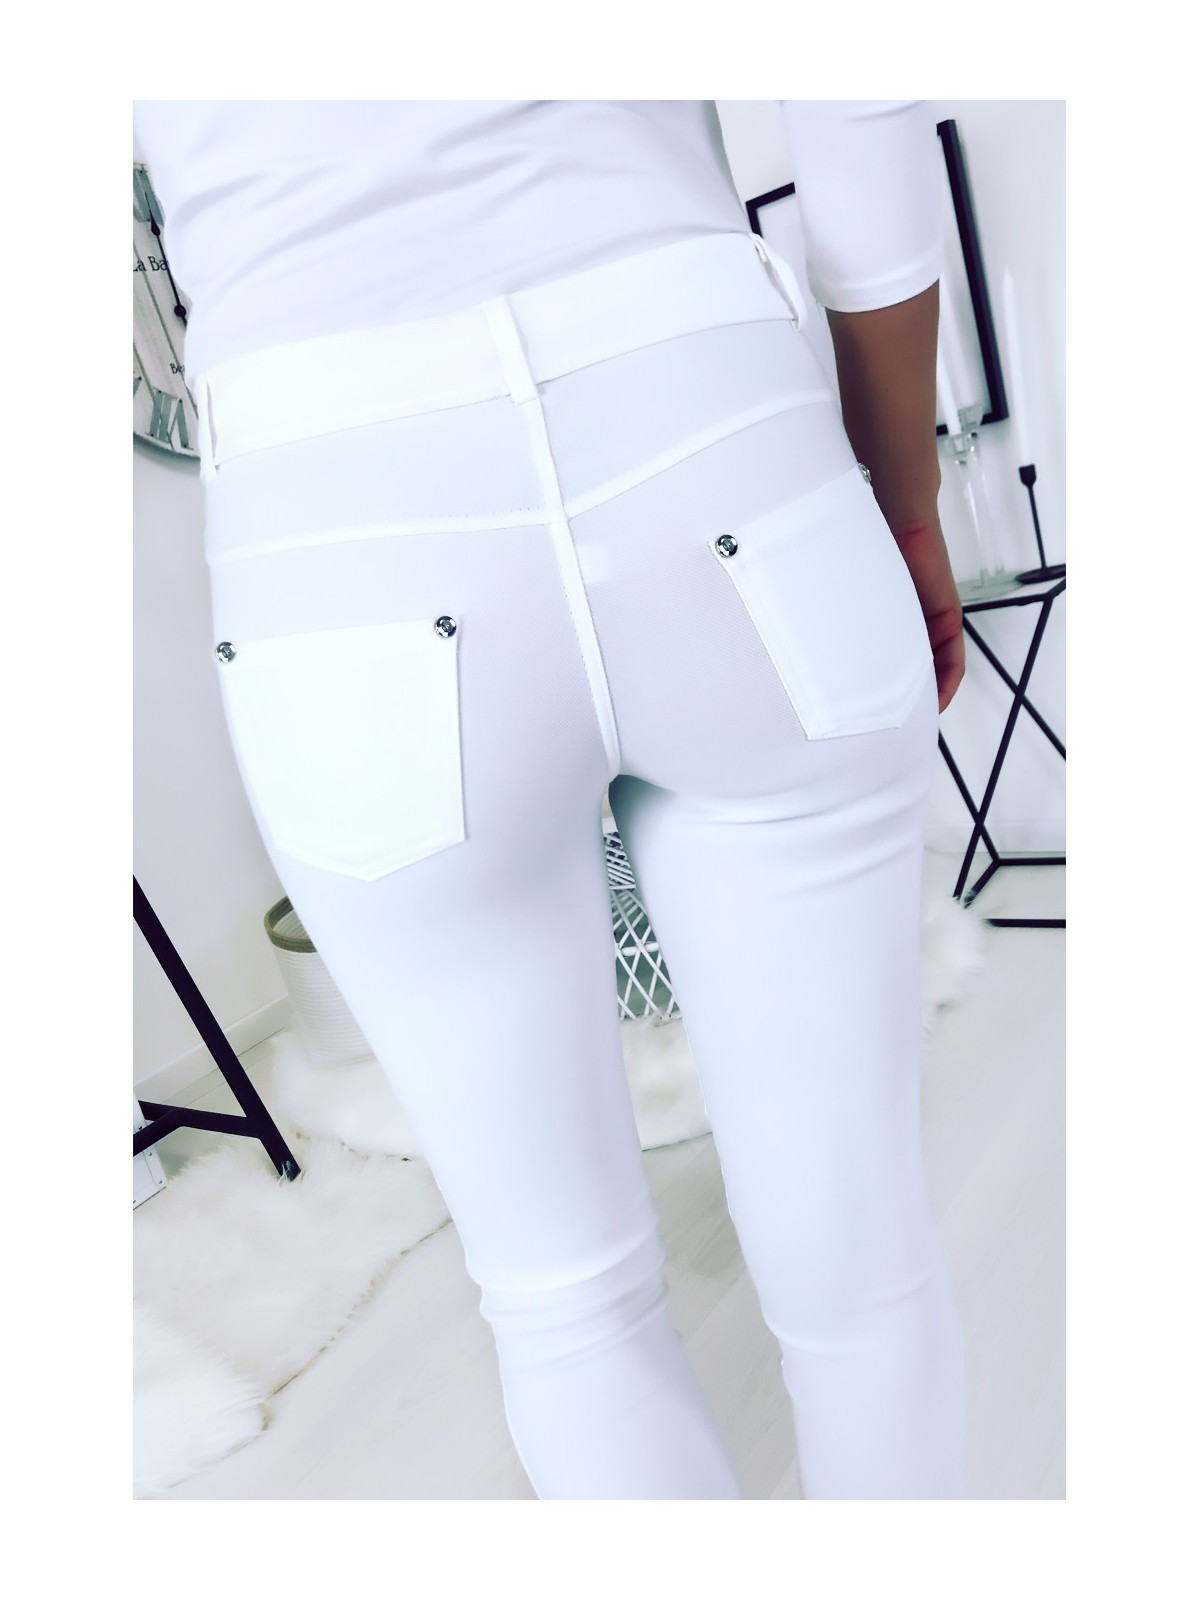 Pantalon slim Blanc, basic avec poche avant et arrière - 5